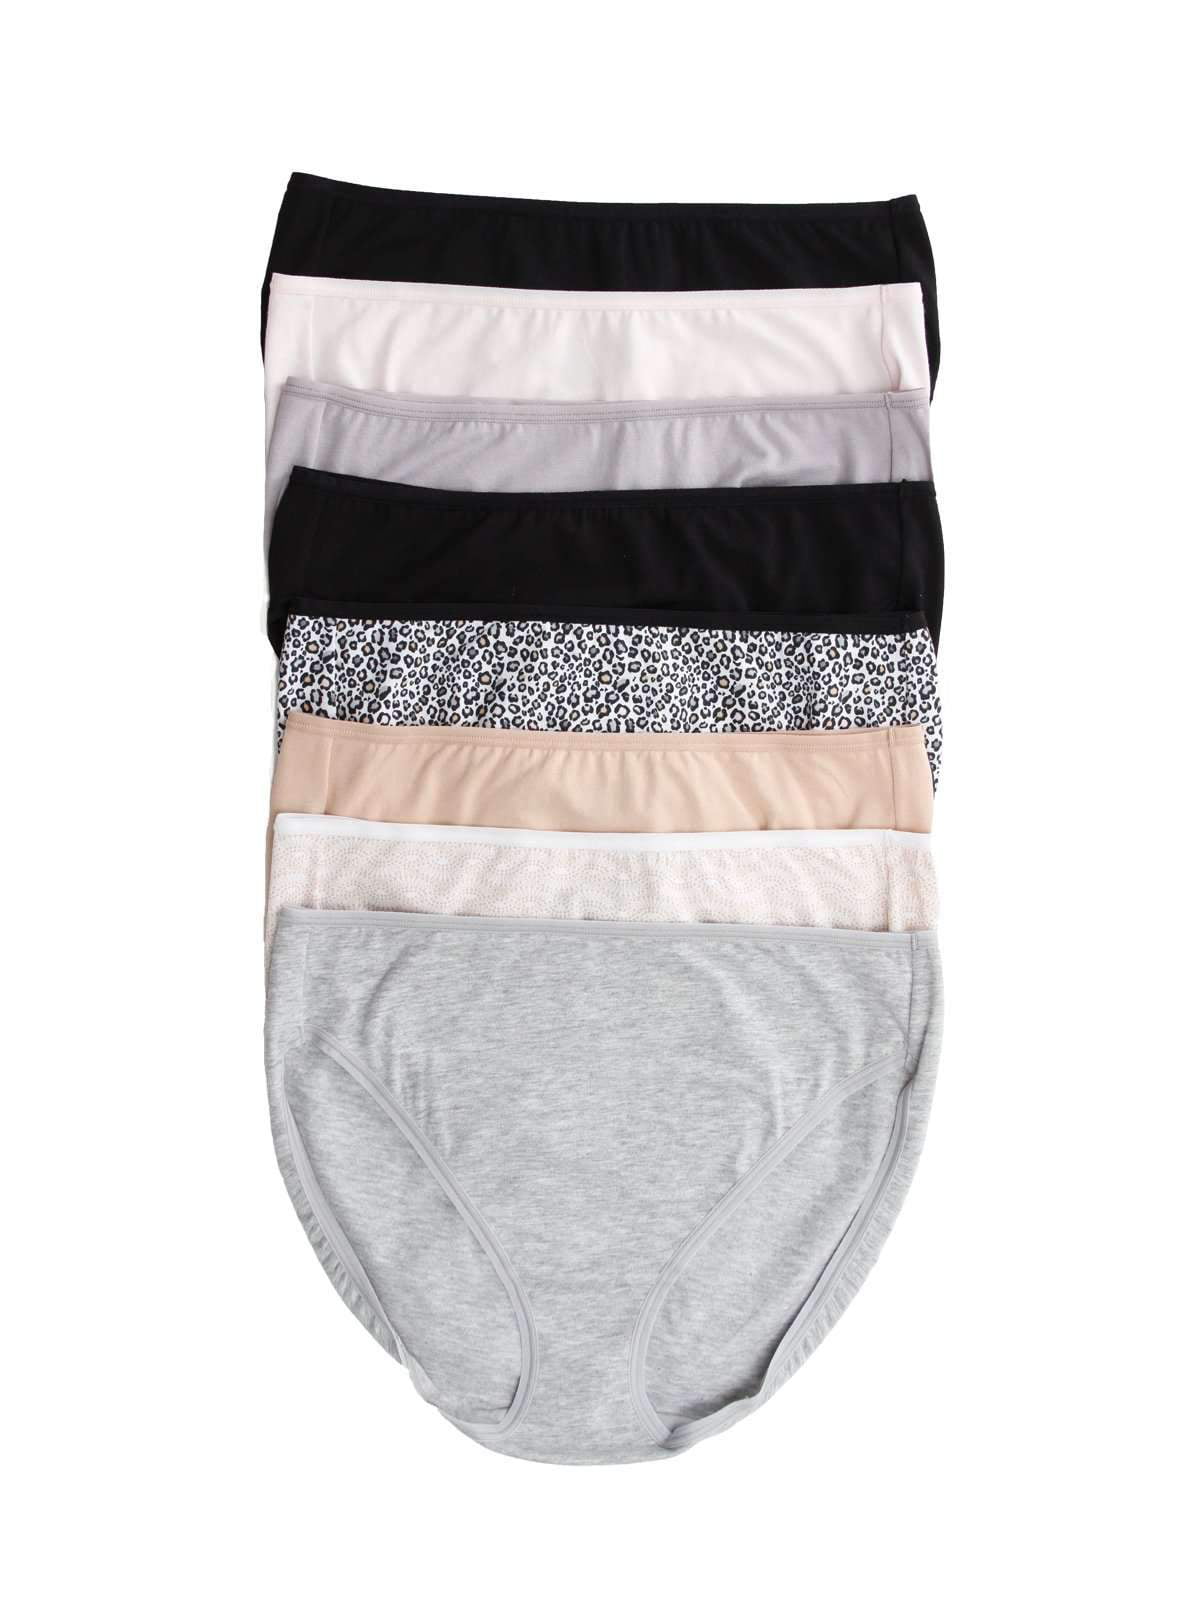 Felina Women's Cotton Modal Hi Cut Panties - 8-pack (newsprint, X-large) :  Target